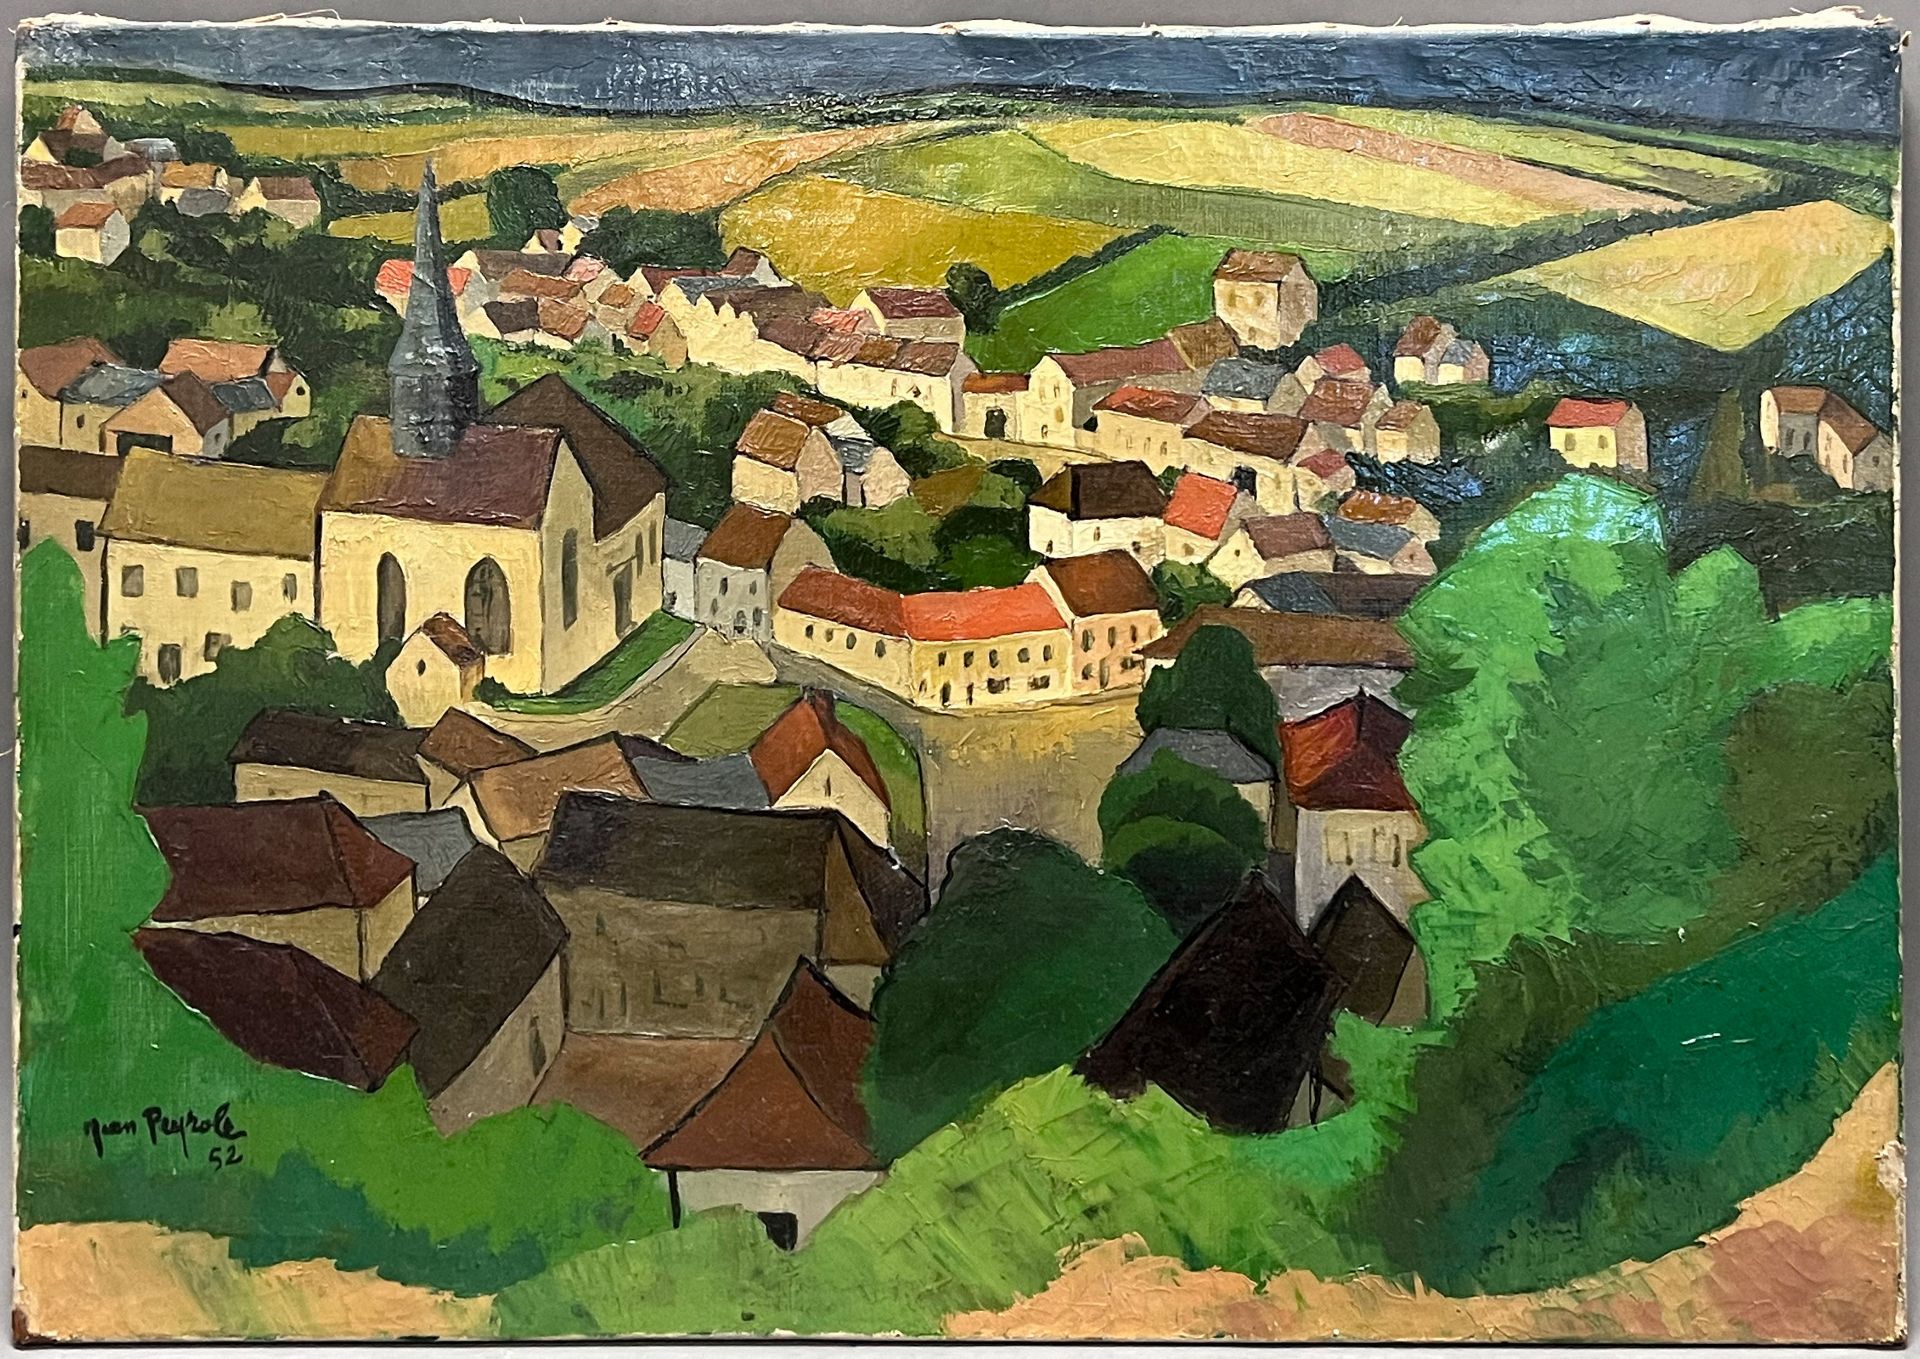 Jean PEYROLE (XX). Blick auf ein Dorf. Wohl in Lorraine. Datiert 1952.